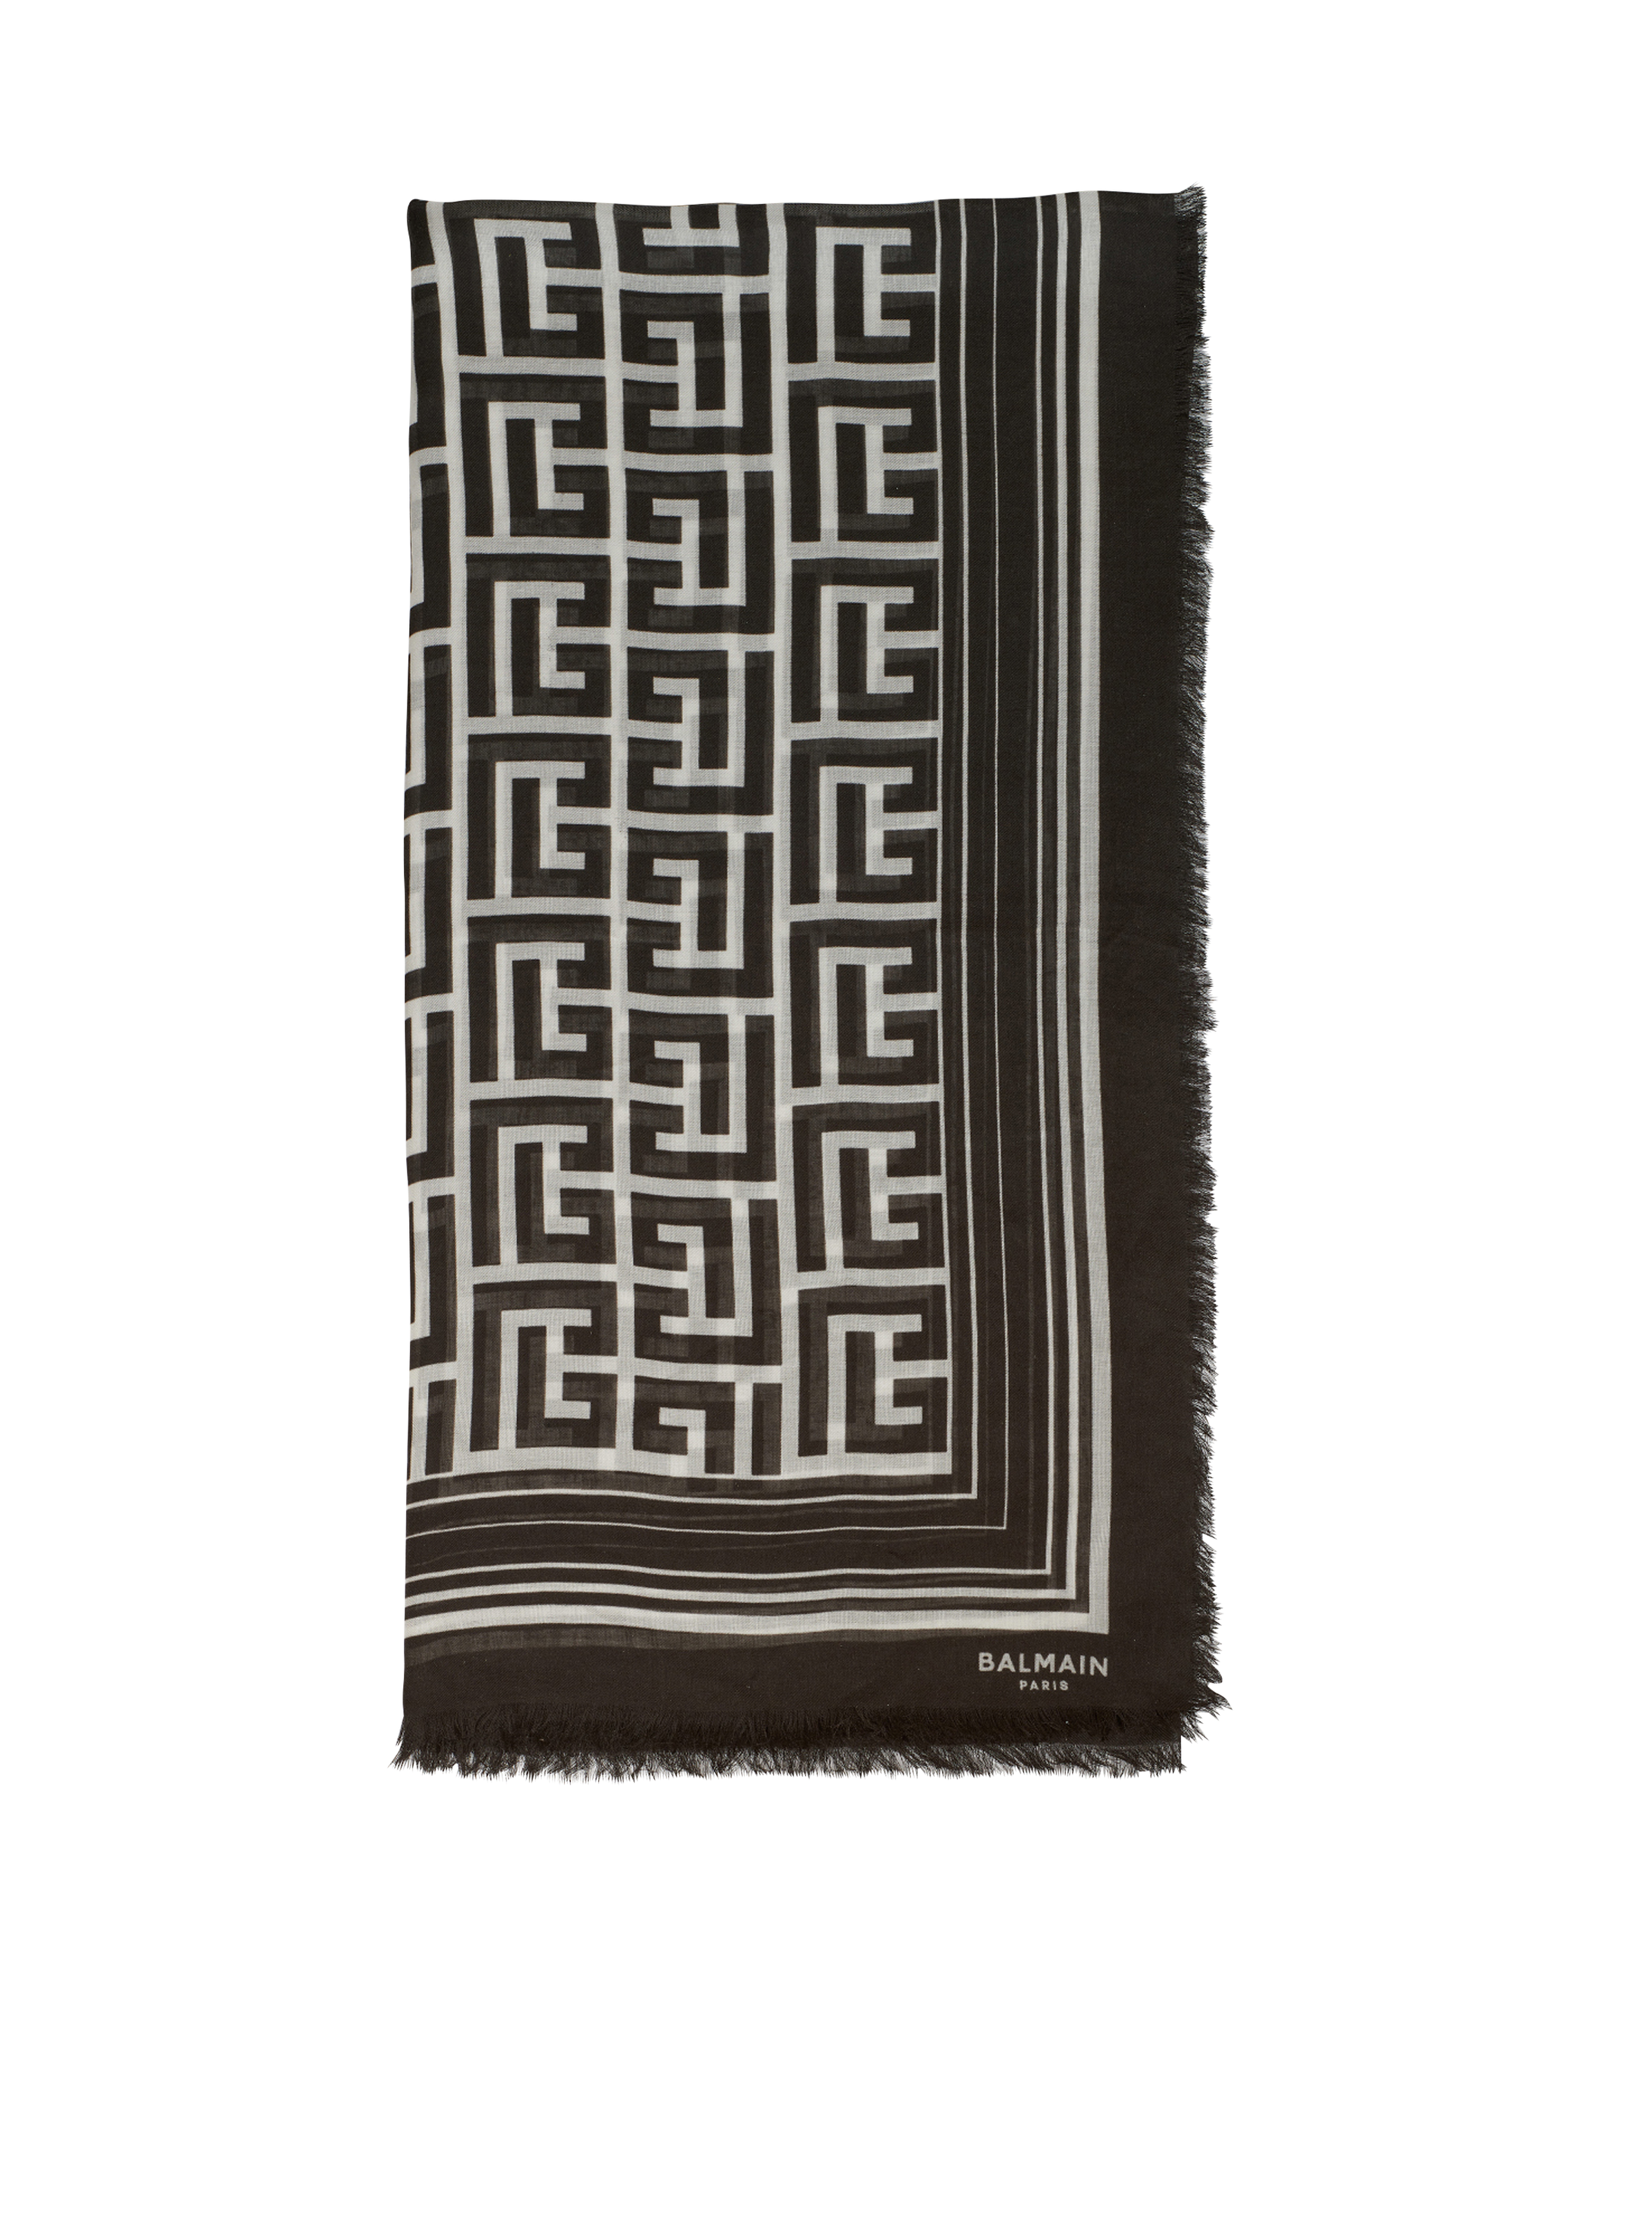 Balmain 모노그램 패턴 디테일 모달 스카프, 검정색